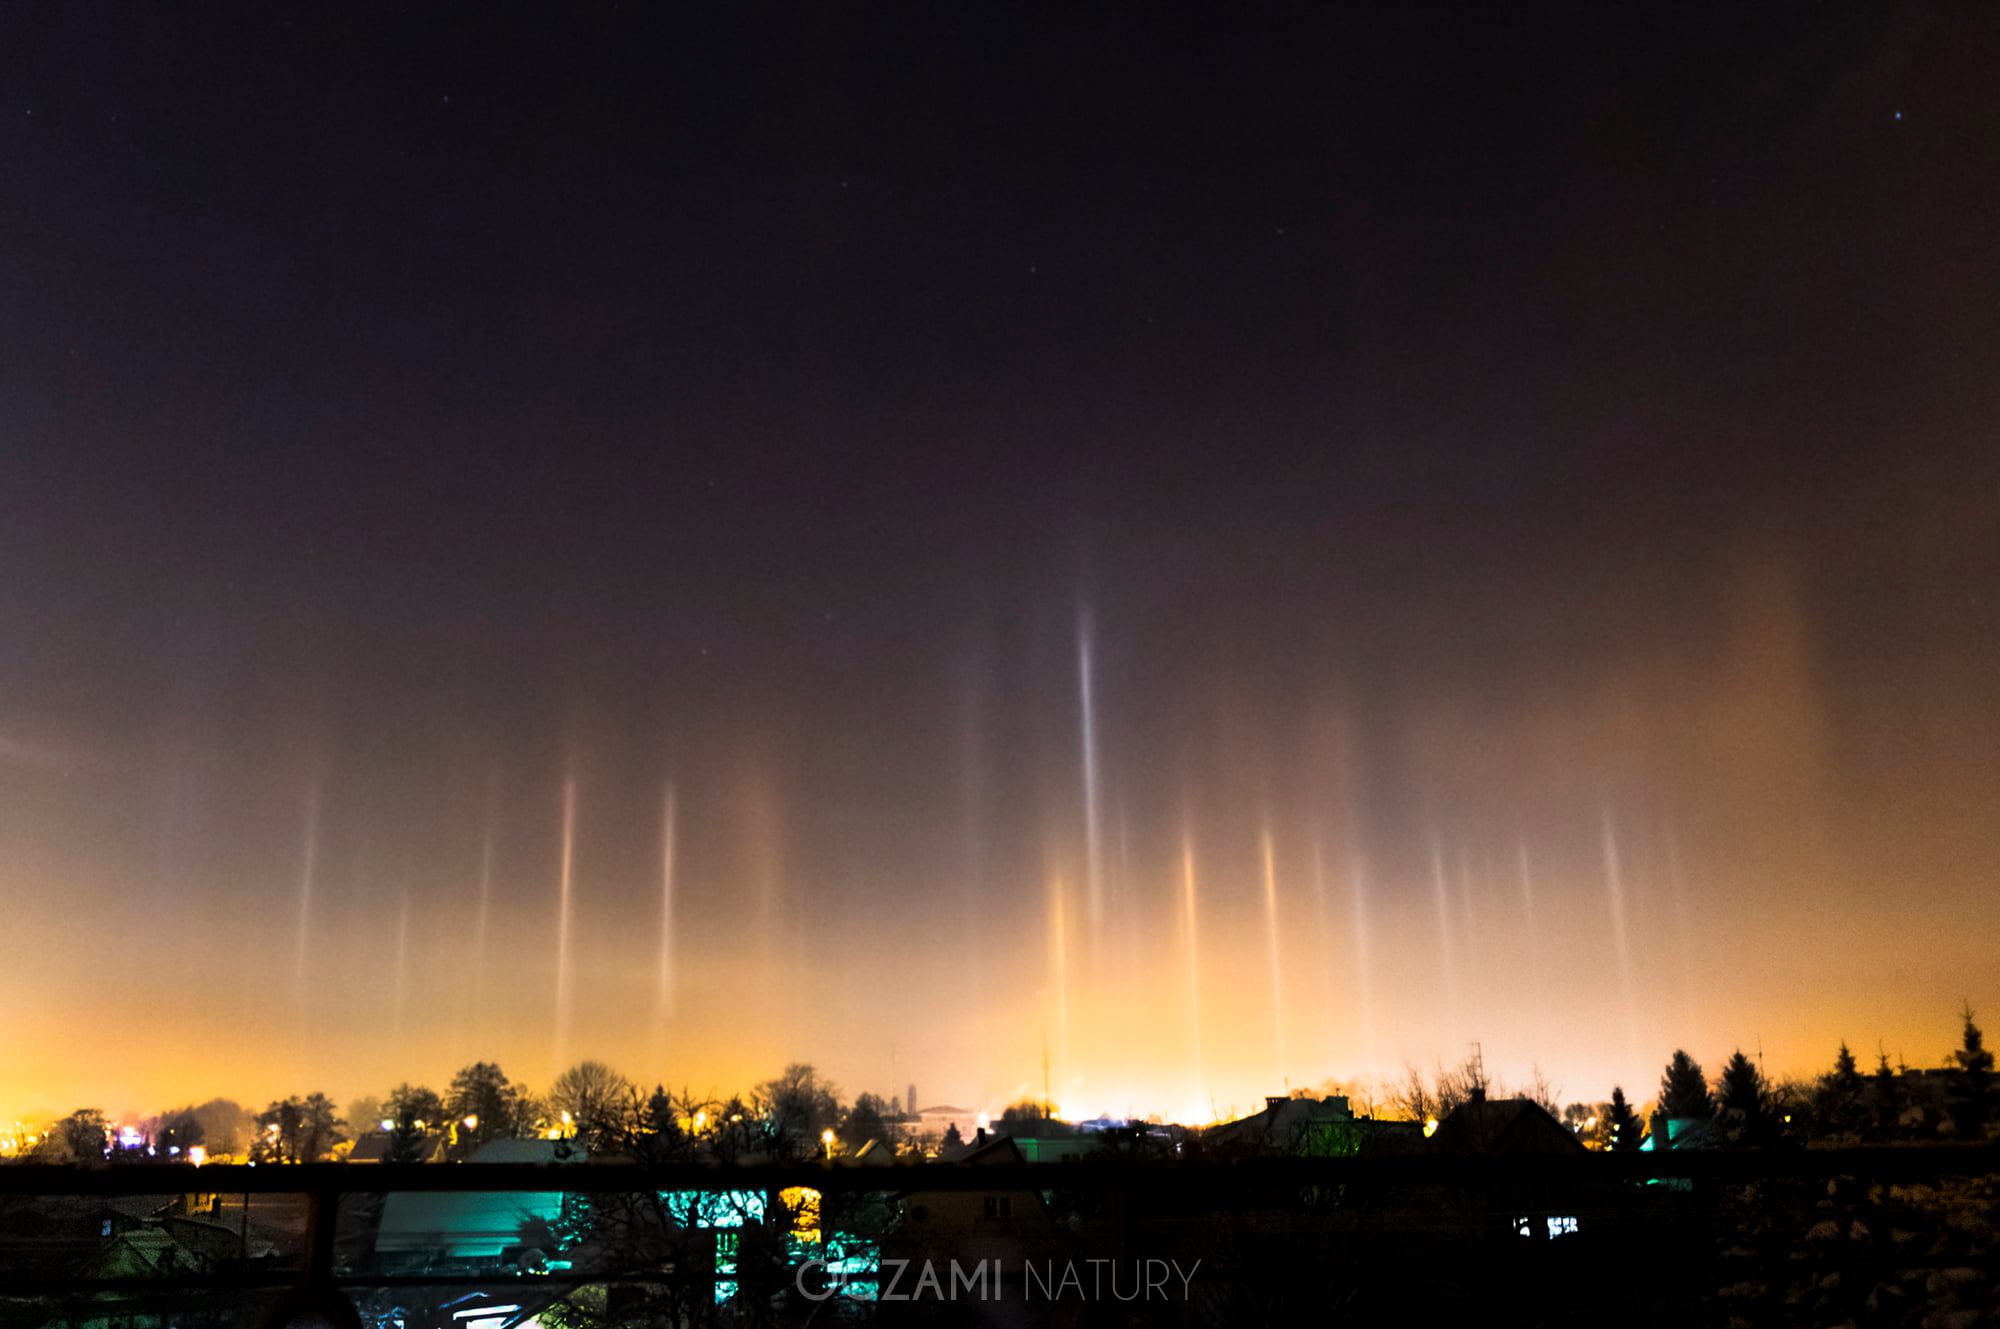 Polarlichter auf dem polnischen Himmel (Bild: Oczami natury / Facebook)